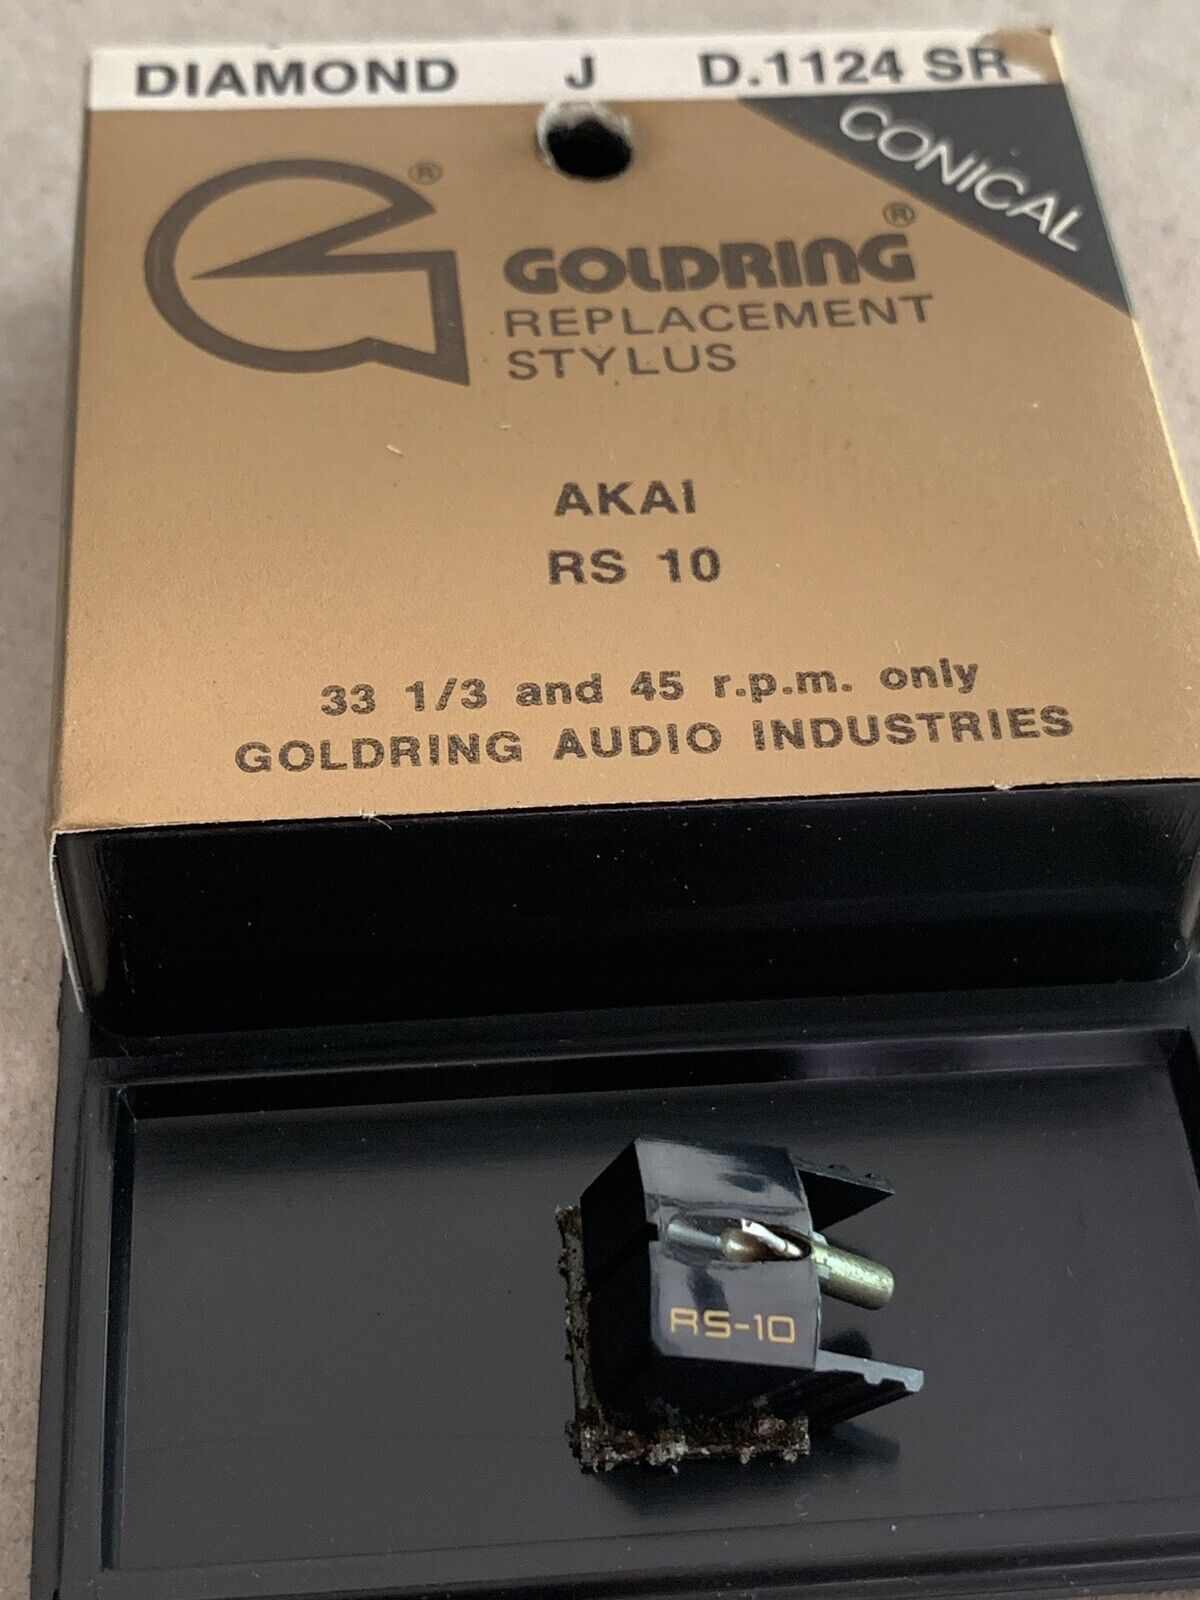 Goldring D 1124 SR Stylus Akai RS 10